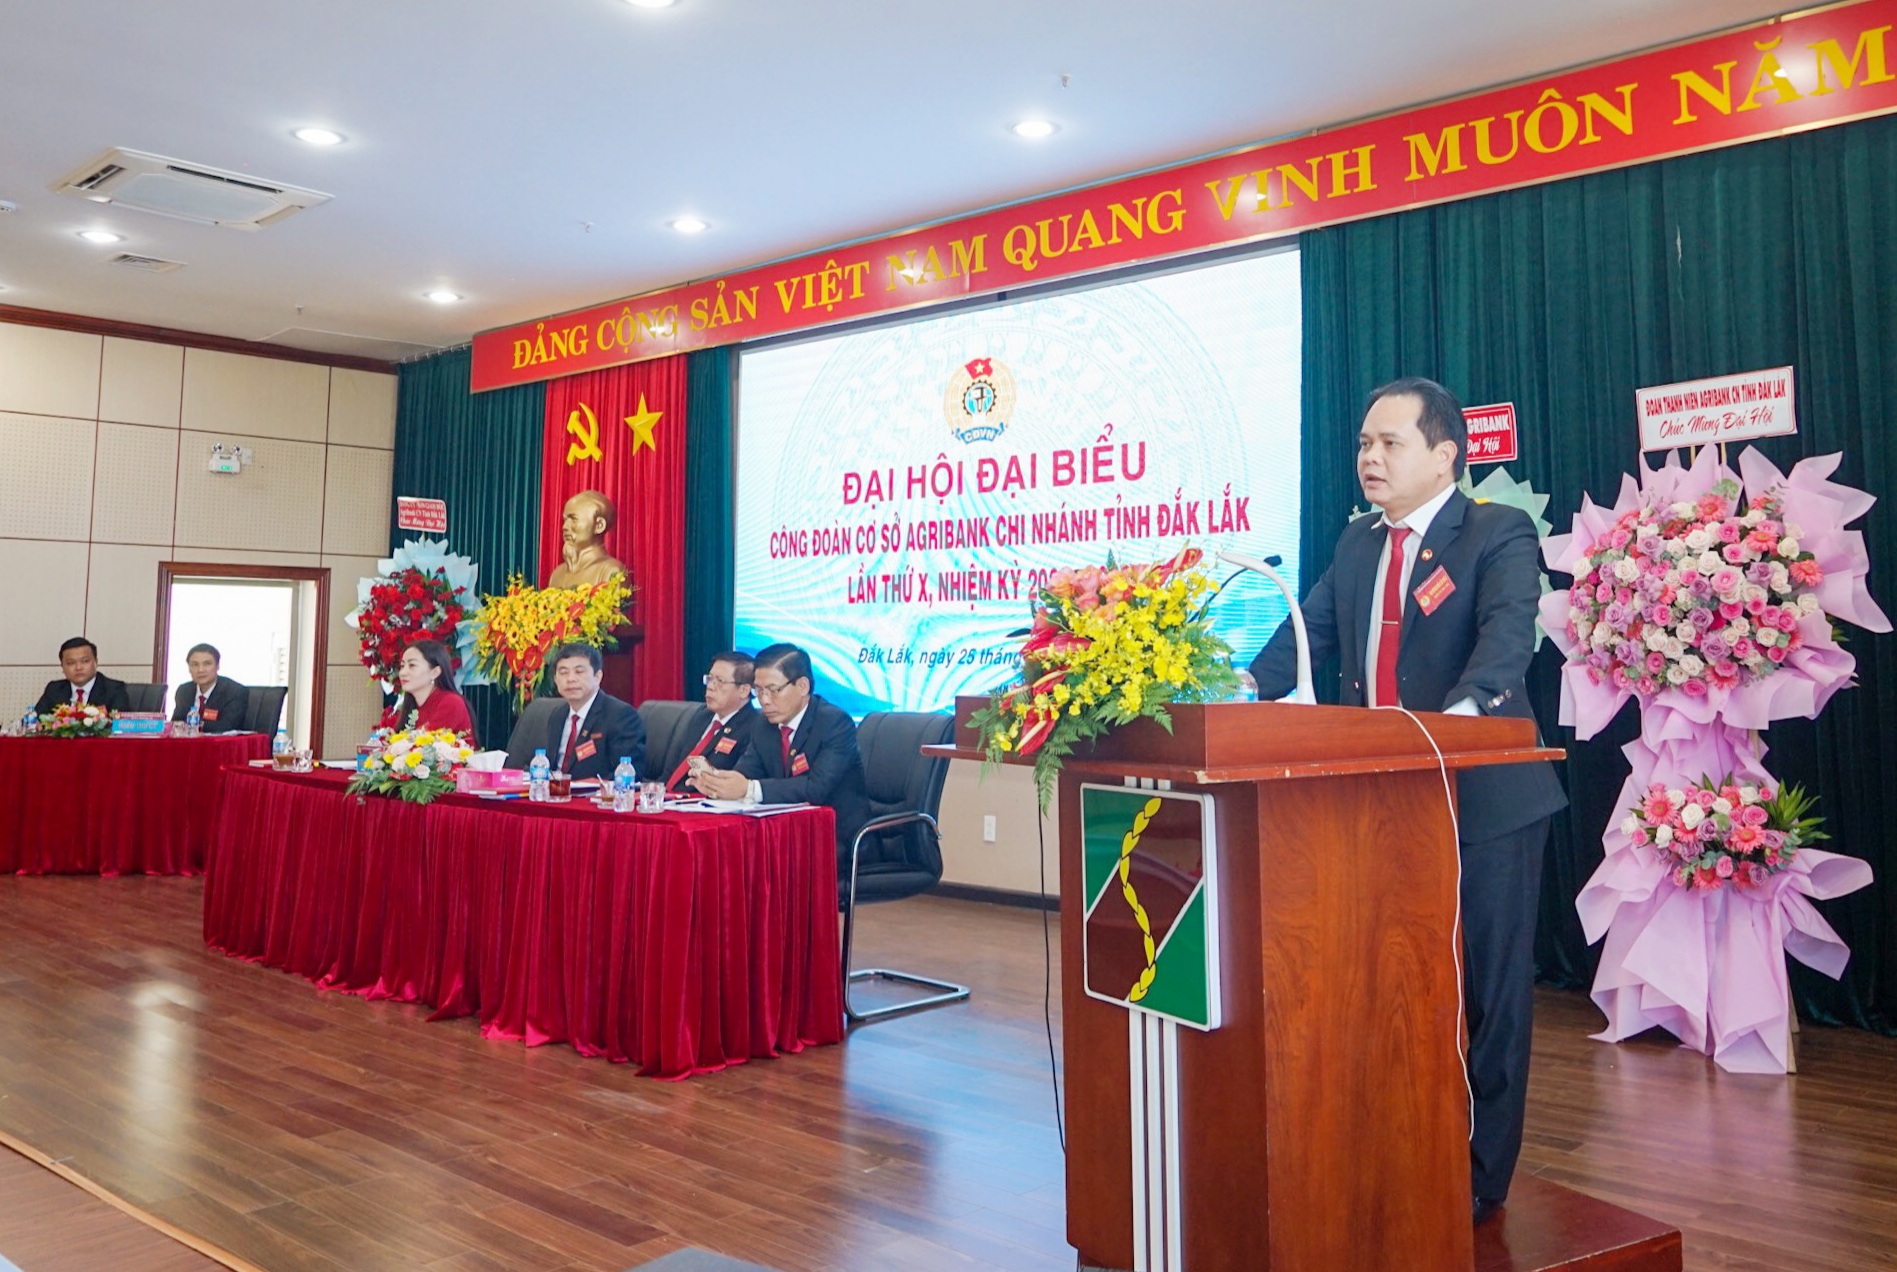 Đại hội công đoàn cơ sở Agribank tỉnh Đắk Lắk lần thứ X, nhiệm kỳ 2023-2028 - Ảnh 1.